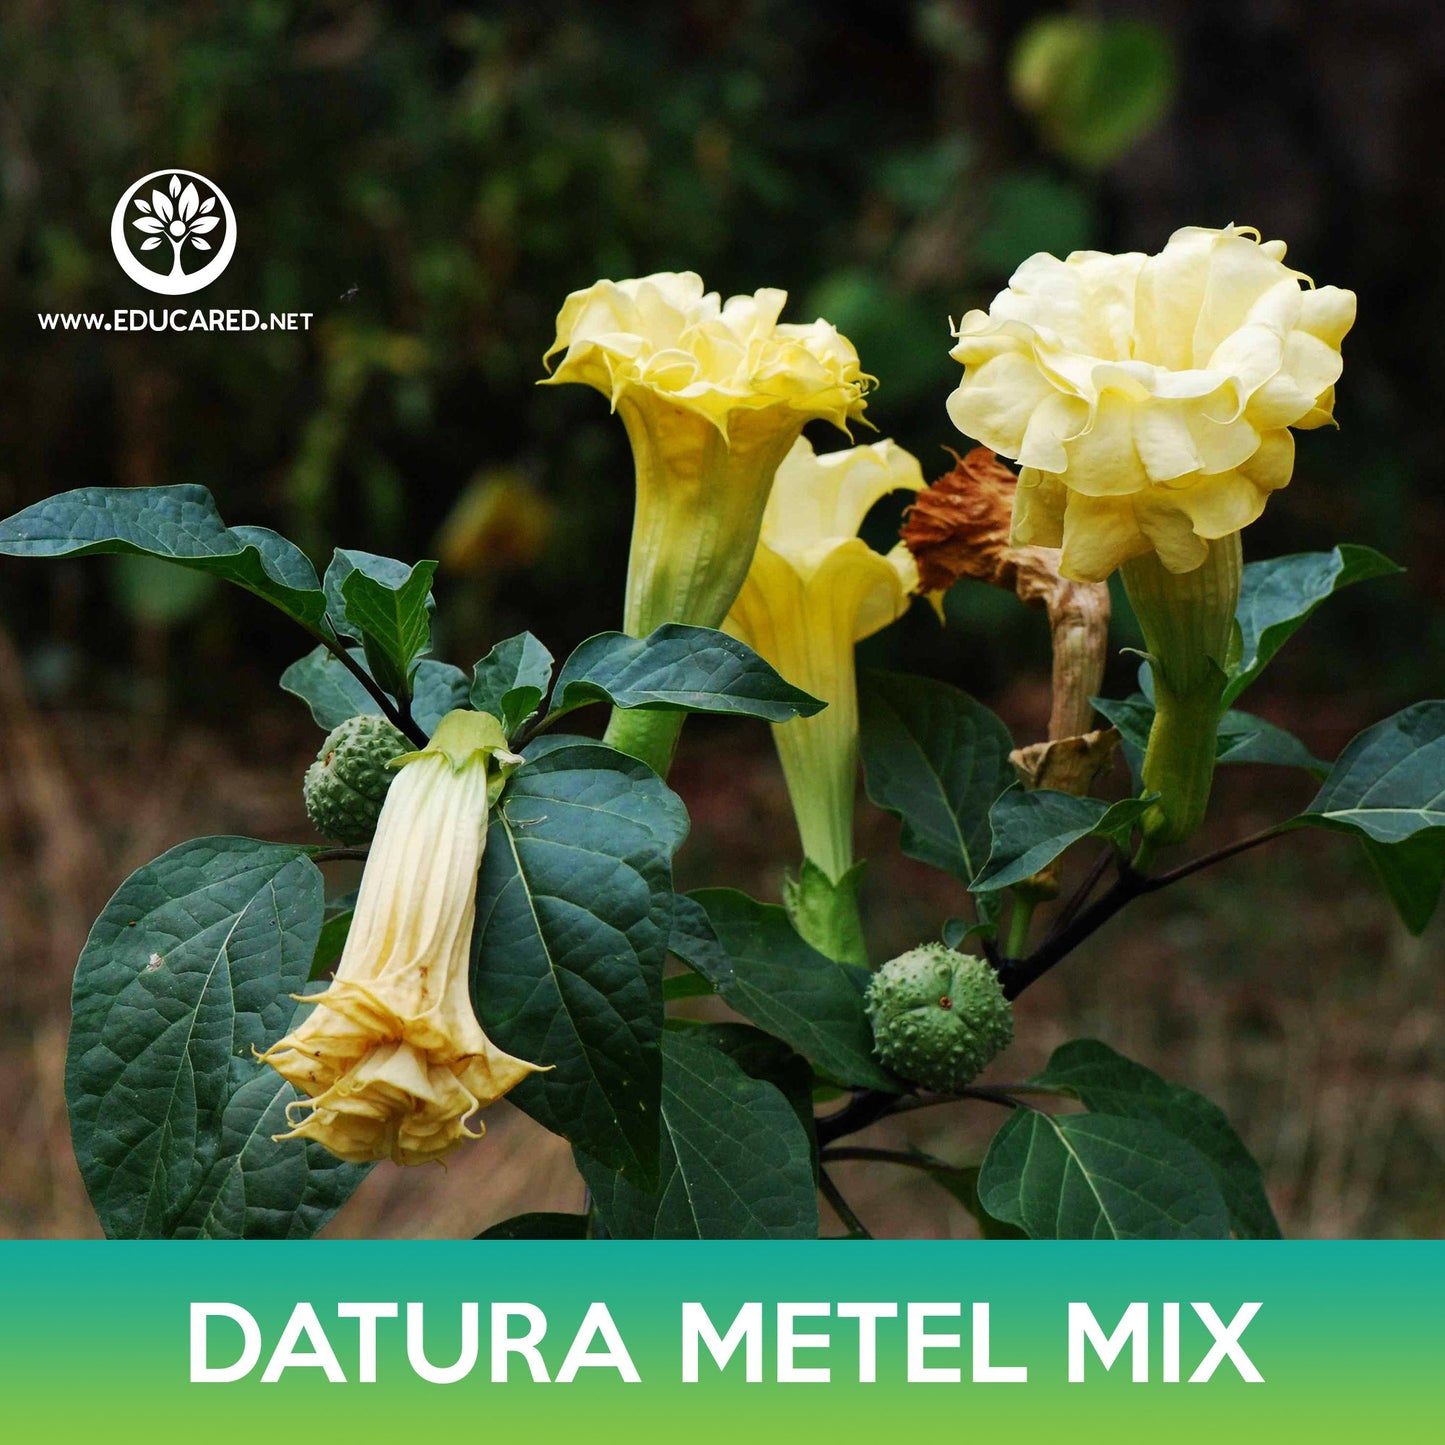 Datura Metel Mix Seeds, Angel's Trumpet Mix, Datura Metel Ballerina